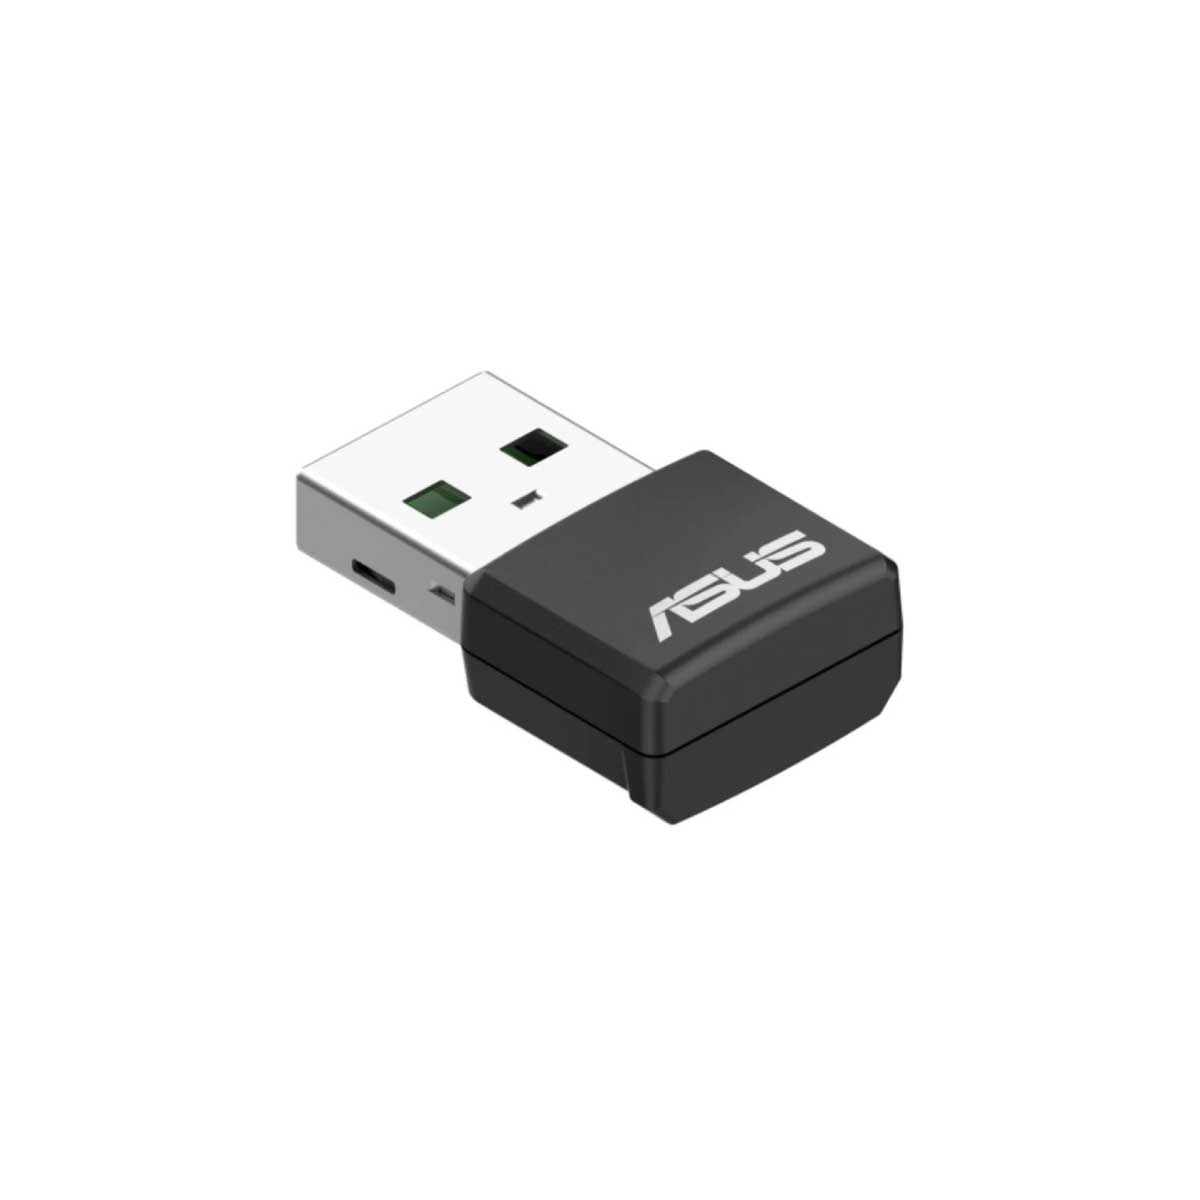 WIRELESS USB ADAPTER (ยูเอสบีไวไฟ) ASUS USB-AX55 - AX1800 DUAL BAND WIFI 6 USB ADAPTER